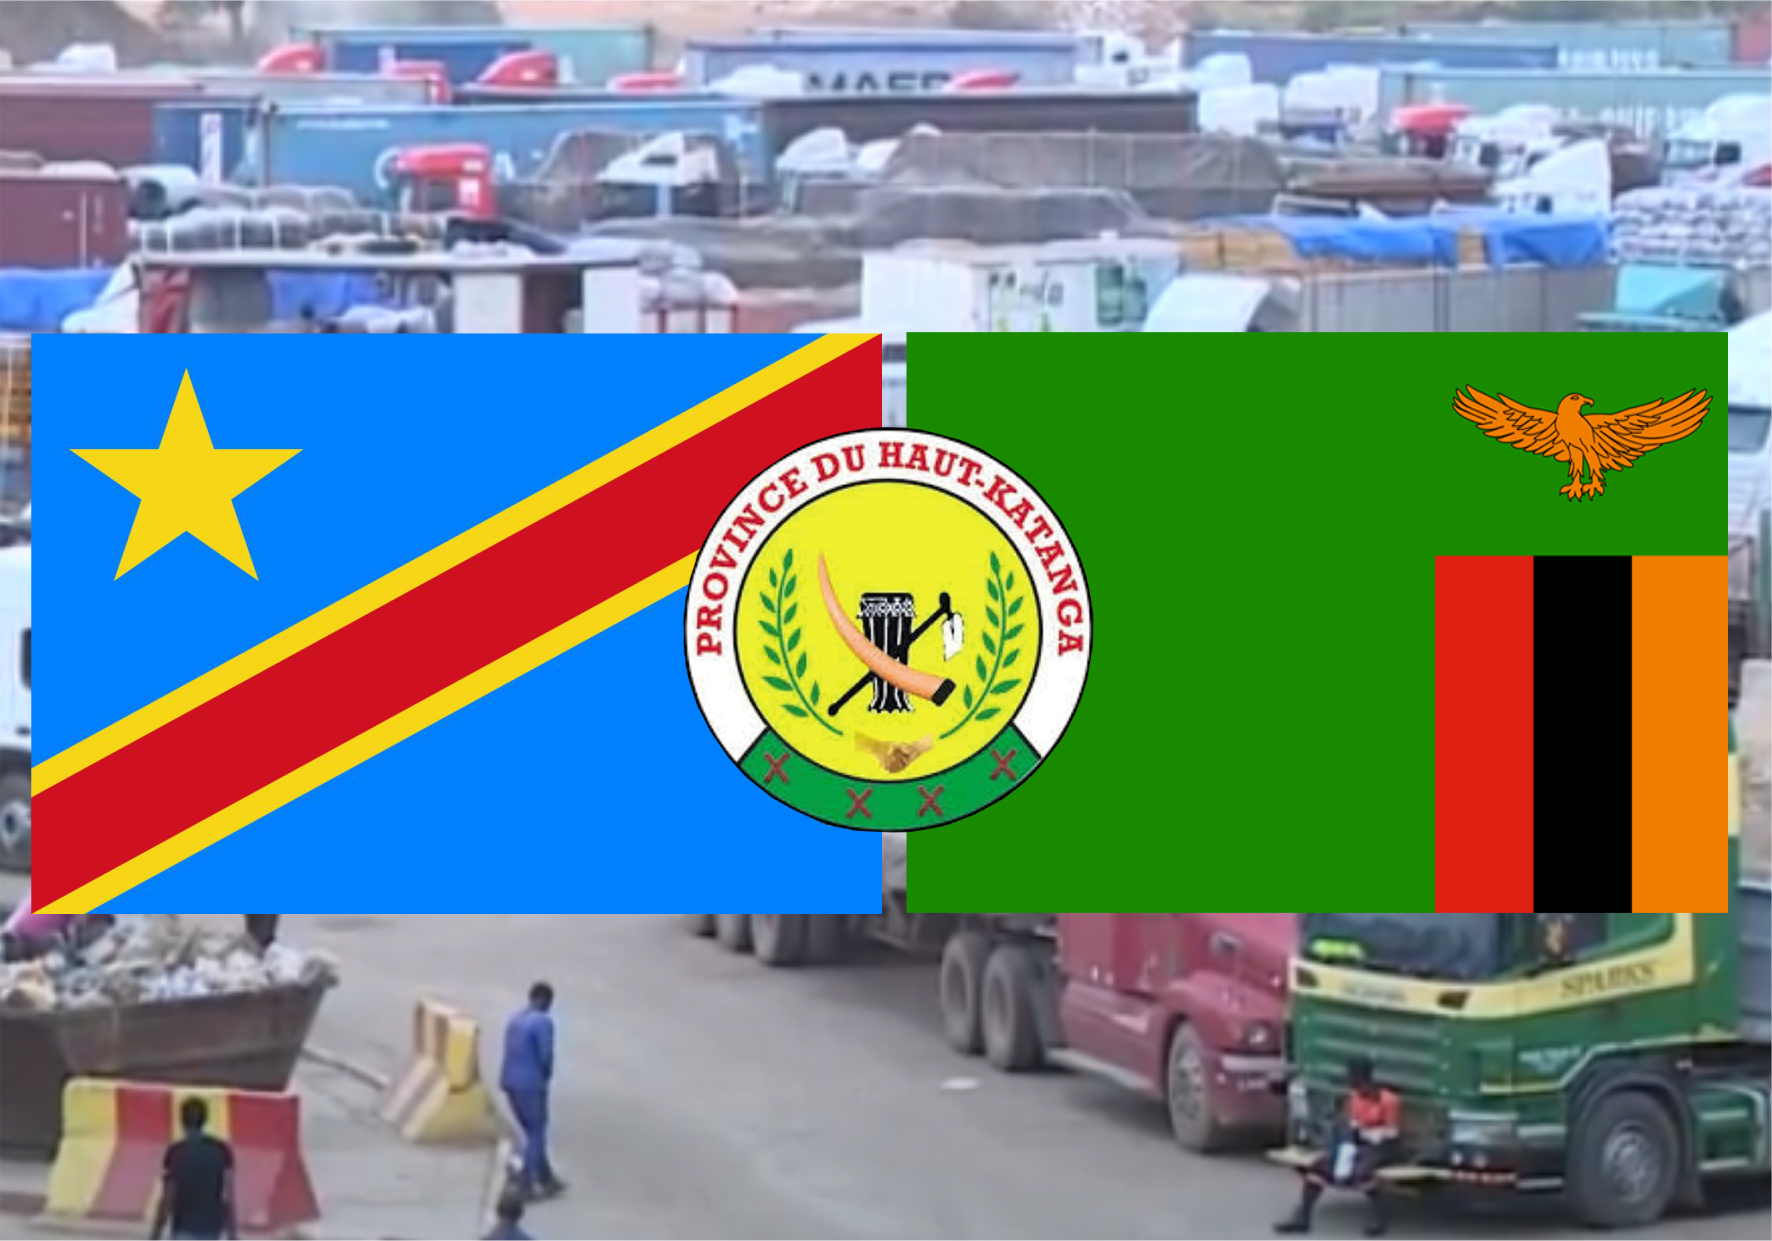 Signature entre la République Démocratique du Congo et la Zambie d'un accord portant facilitation du commerce transfrontalier